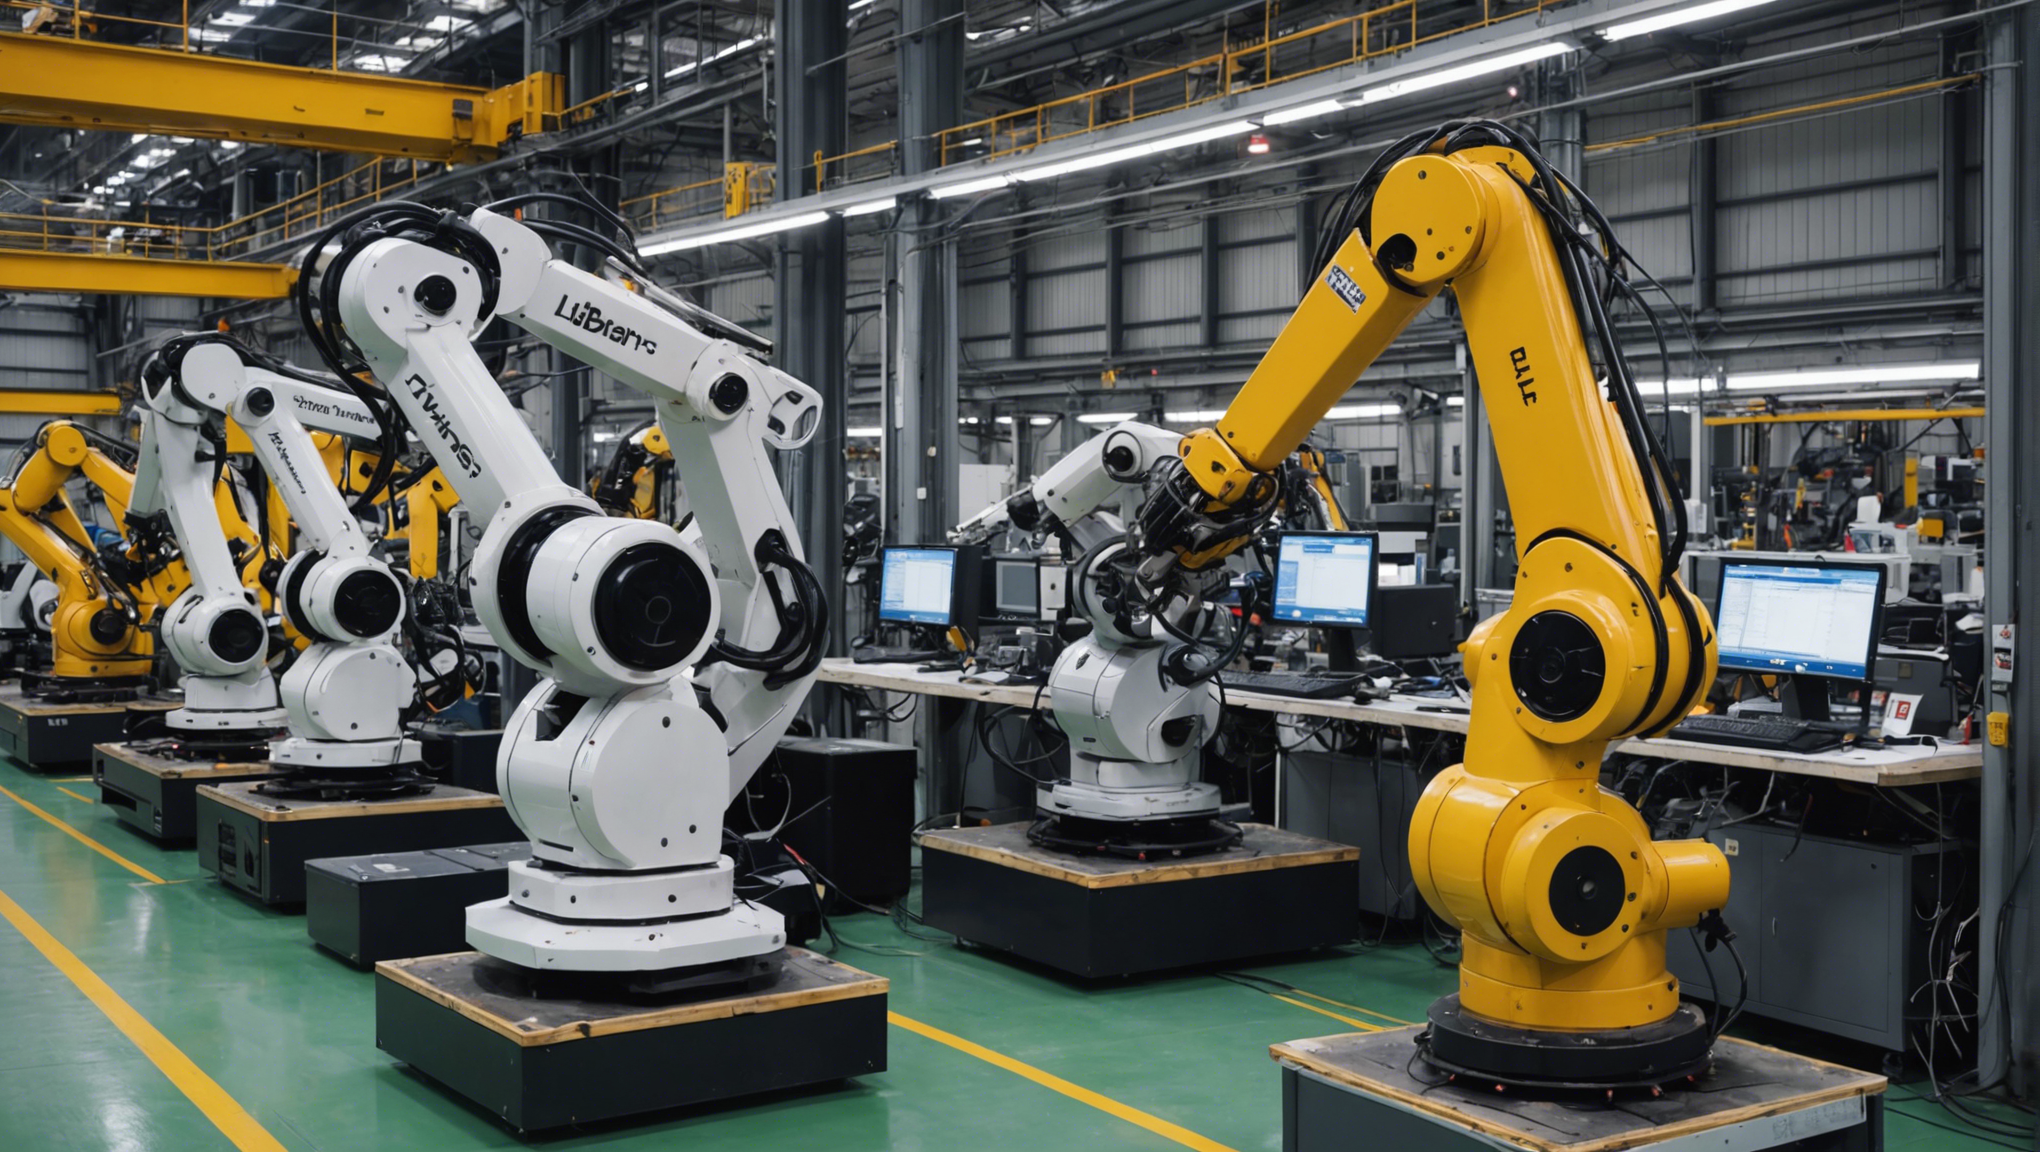 découvrez l'avènement d'une deuxième vague de robots industriels et leur impact sur l'industrie. analyse des opportunités et défis liés à cette révolution technologique.